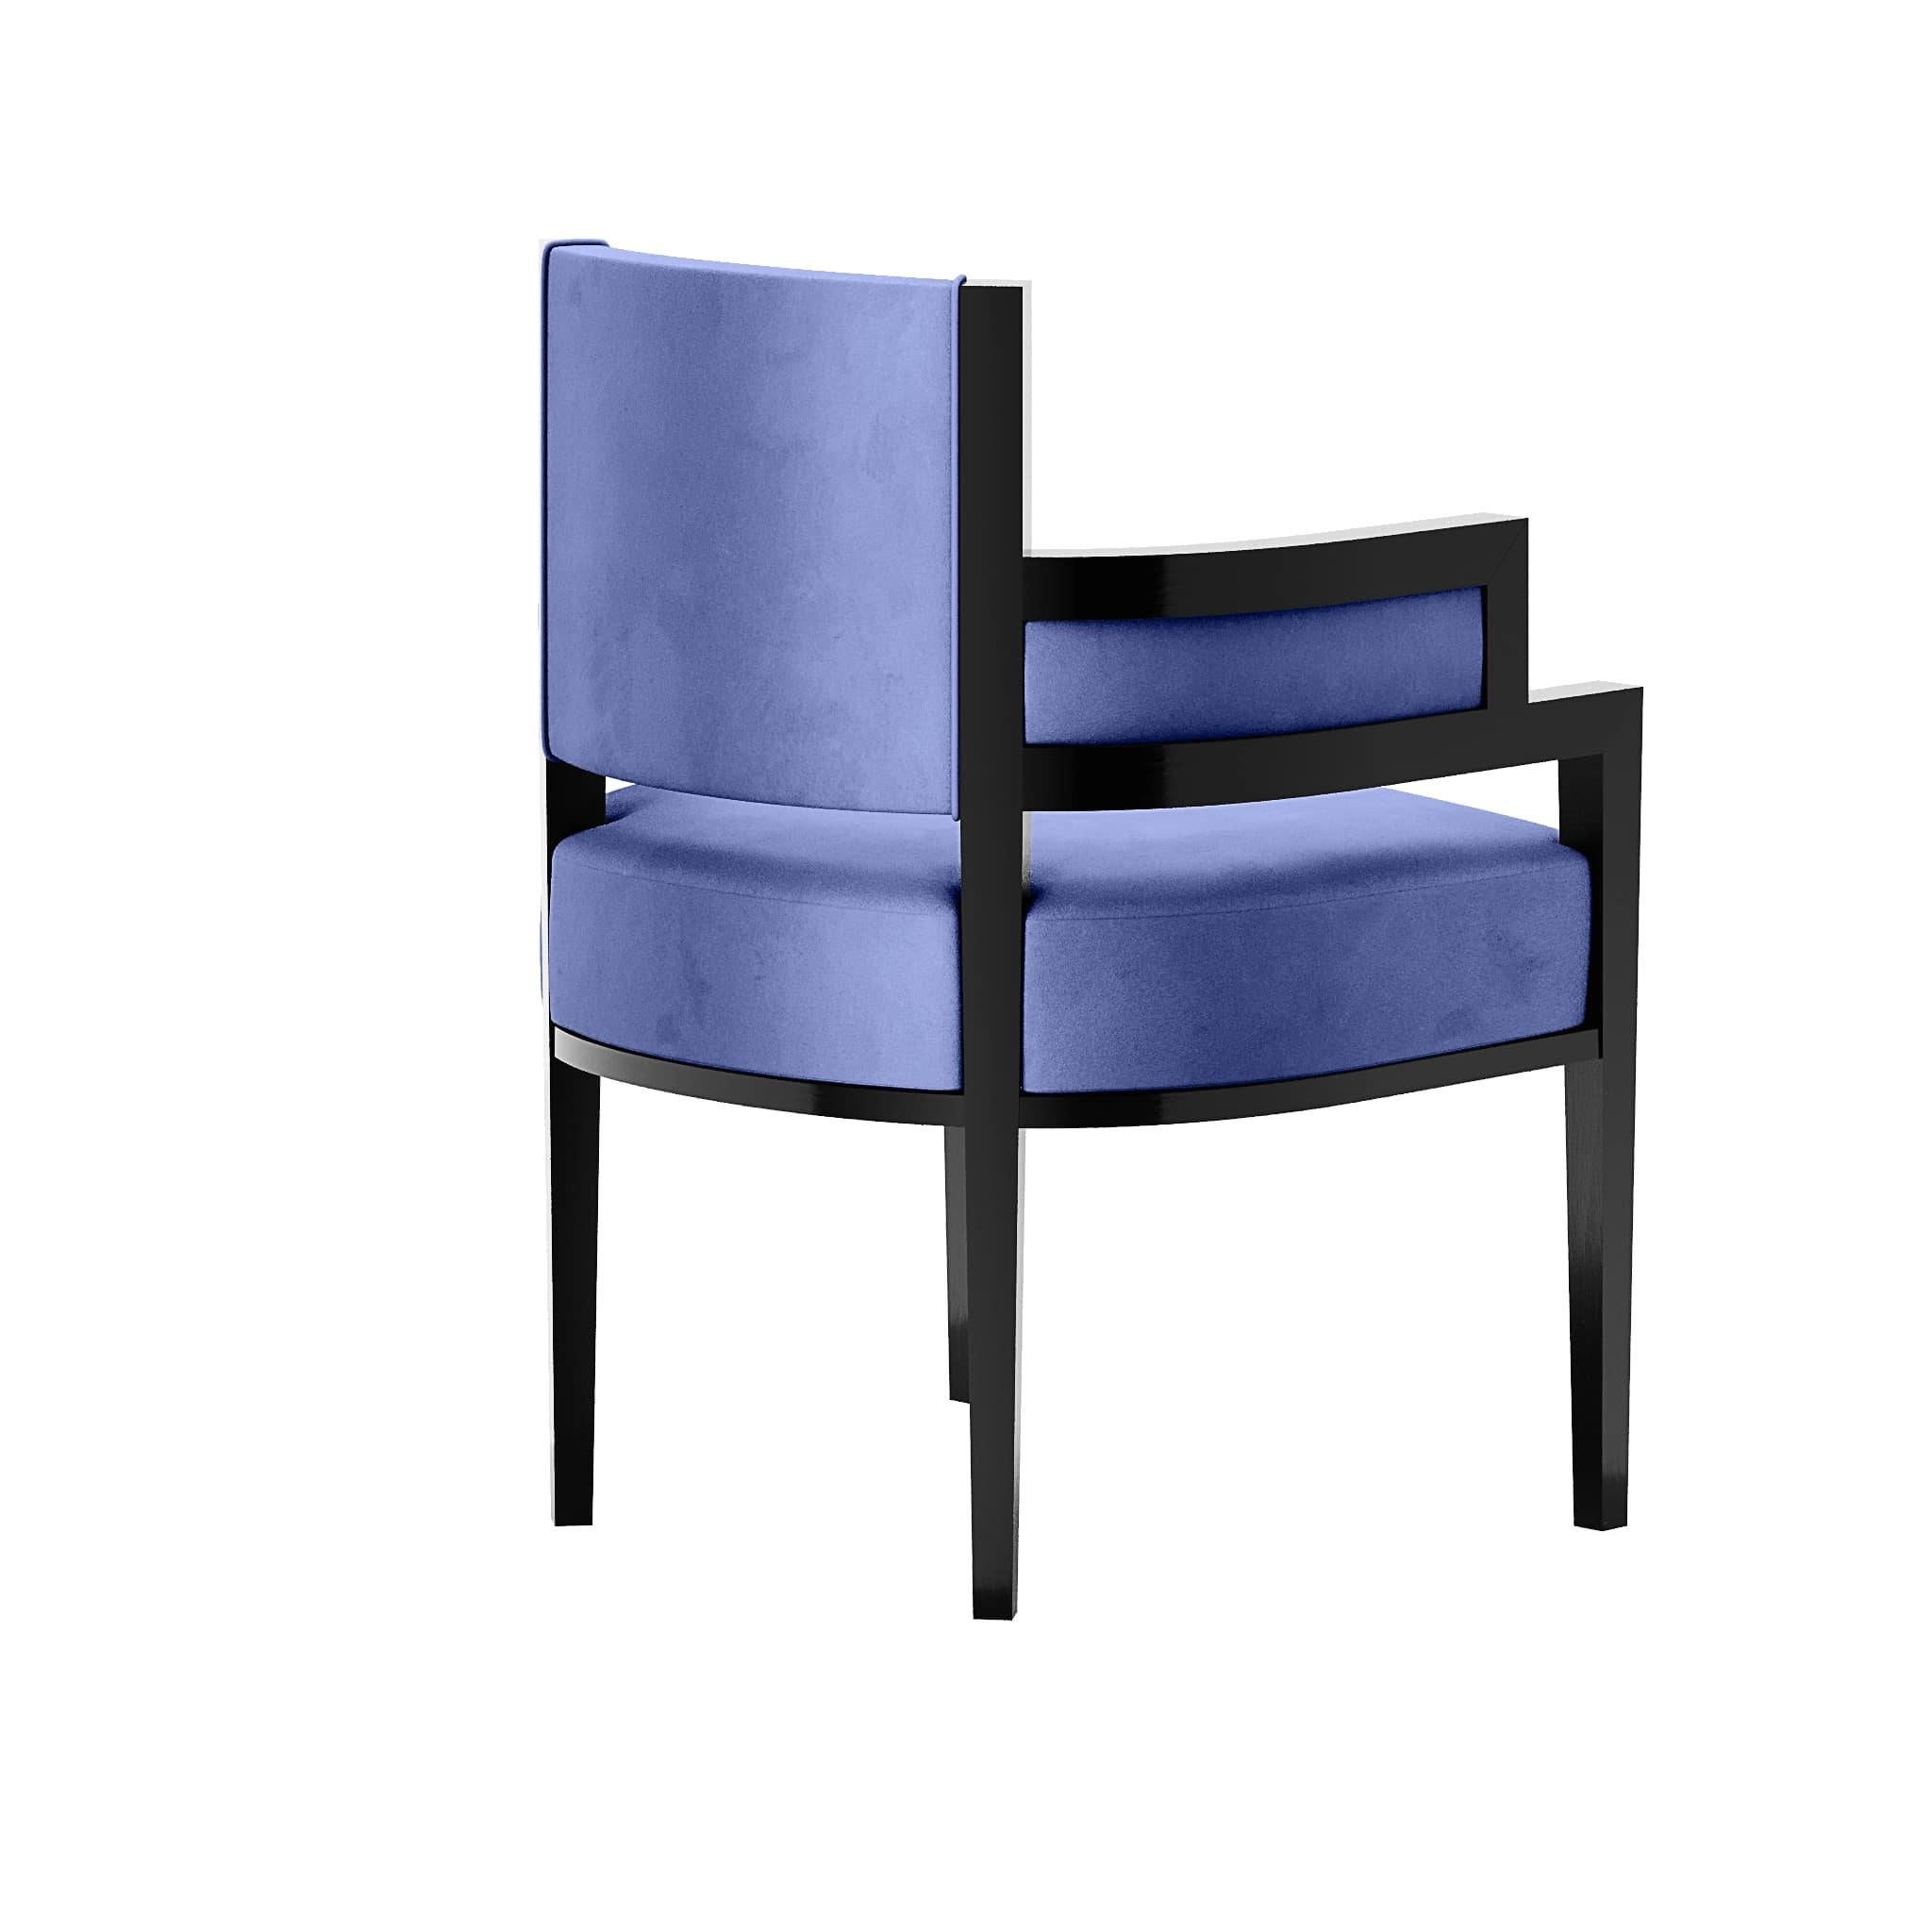 detail chair